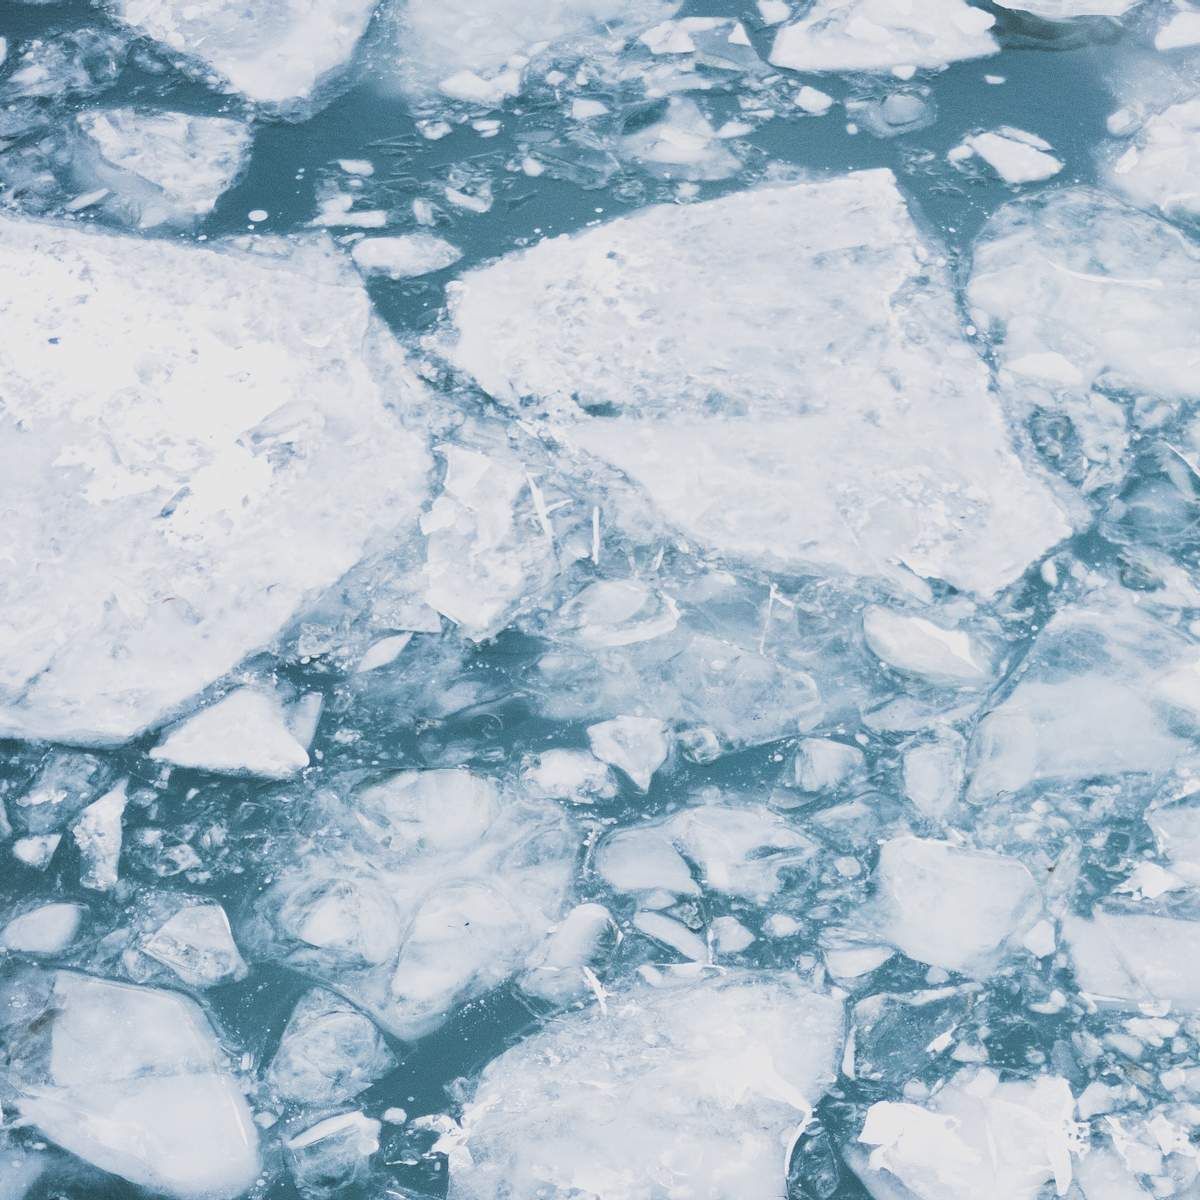 "Хотіли перевірити міцність льоду": на Херсонщині діти провалились у крижану воду - Новини Херсон - 24 Канал